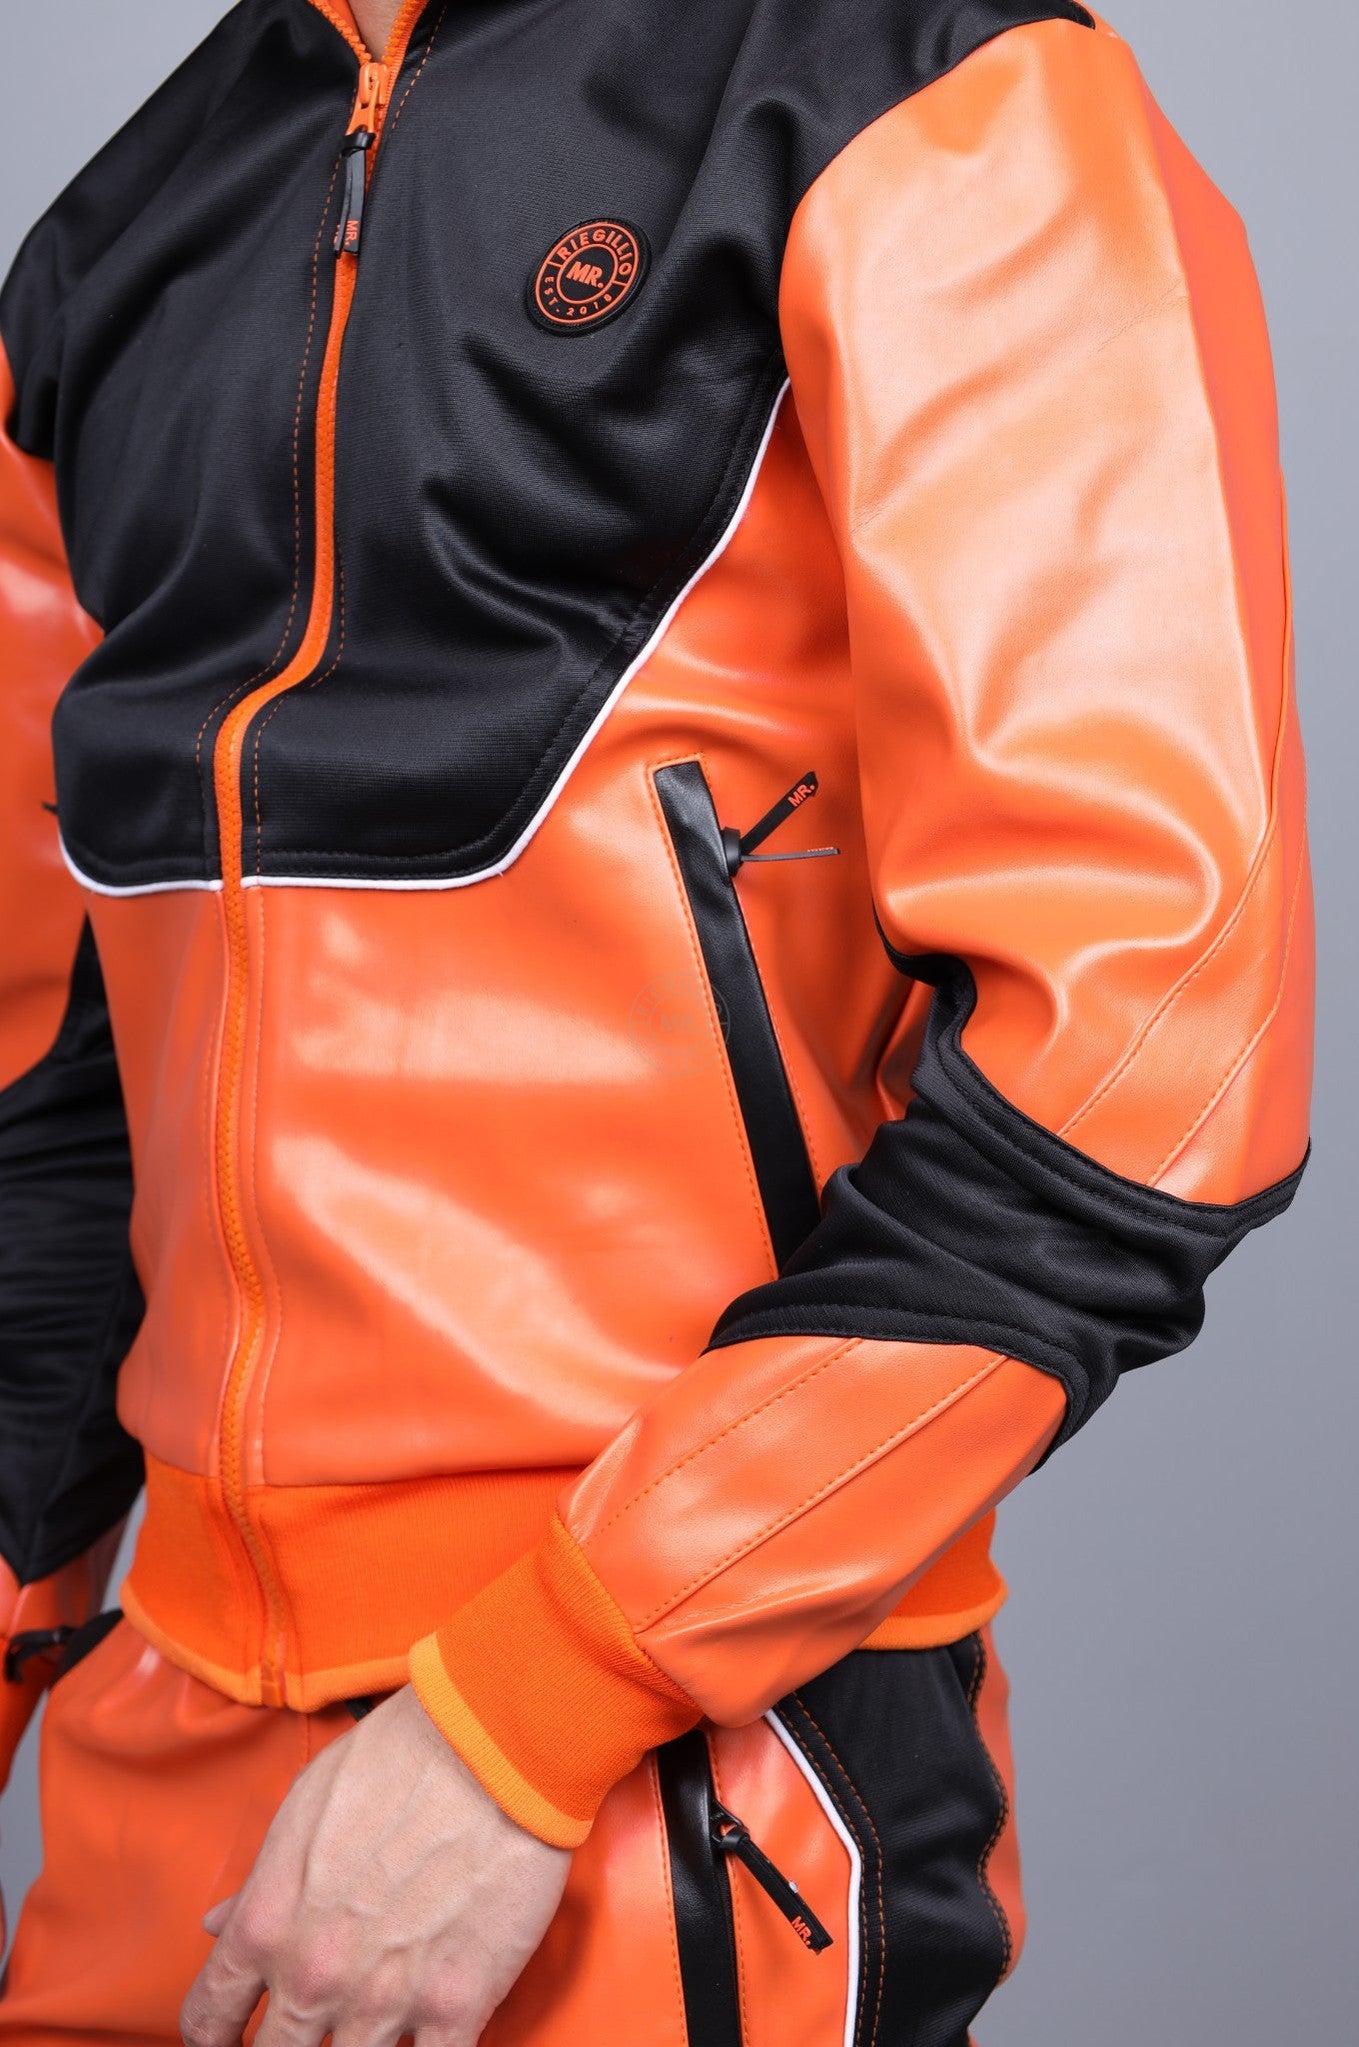 MR. 24 Tracksuit Jacket – Orange at MR. Riegillio